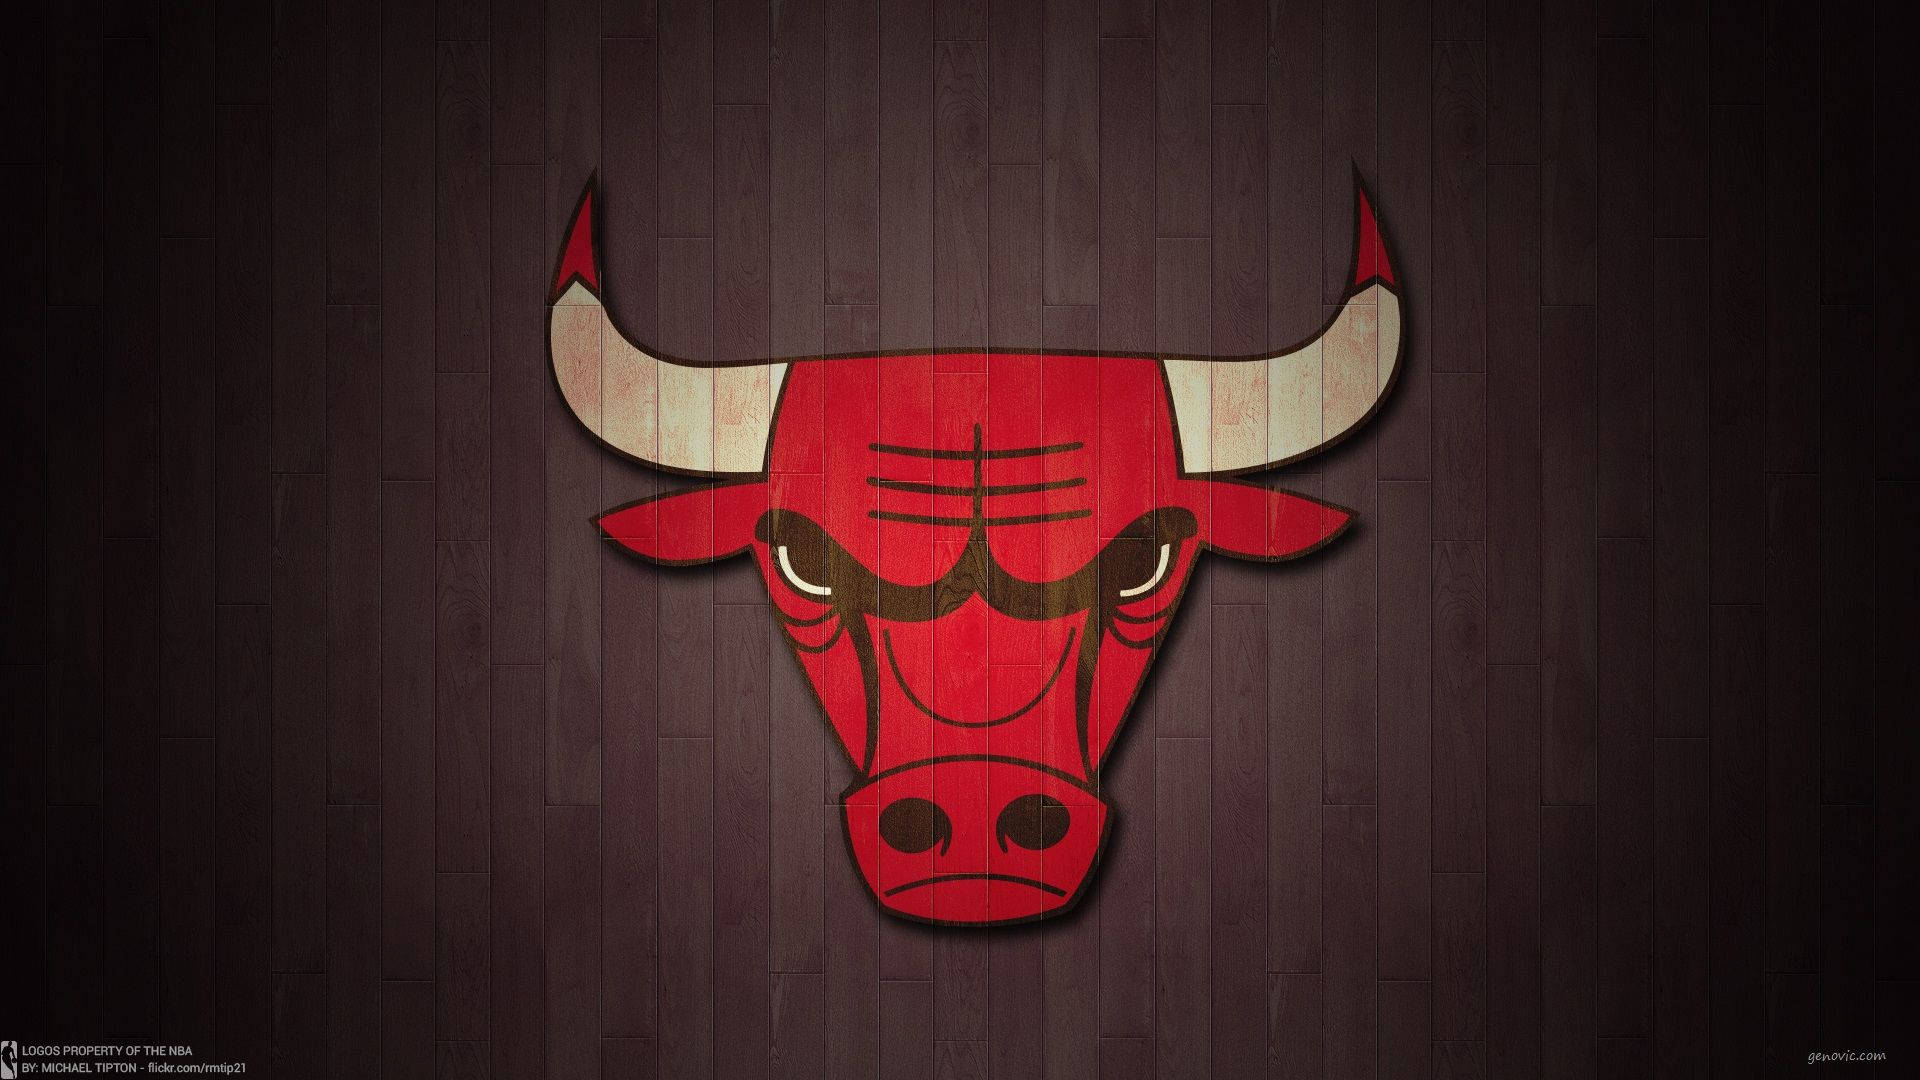 Chicago Bulls Basketball Court Logo